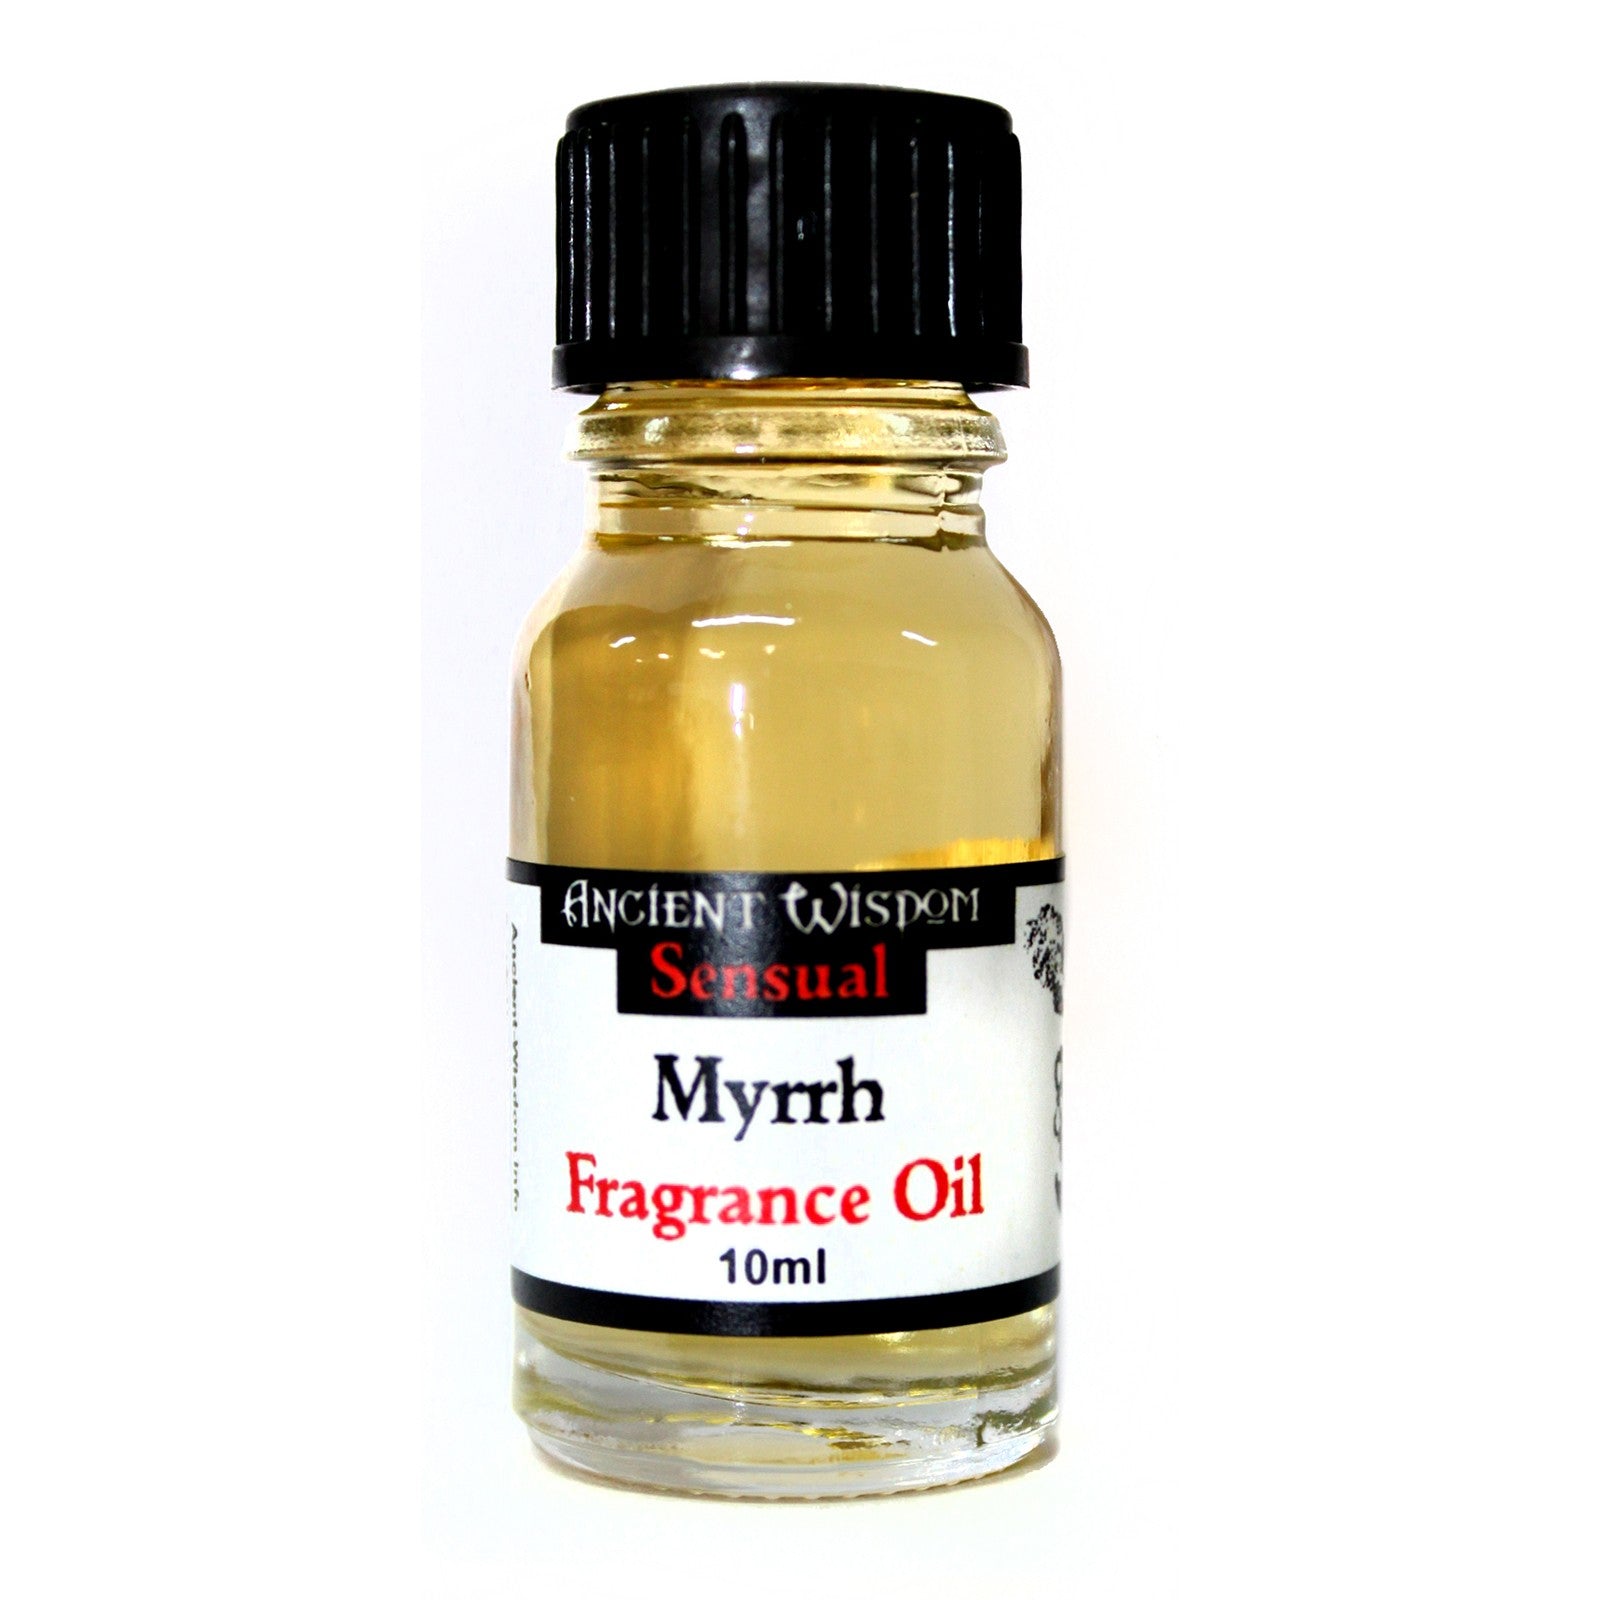 View 10ml Myrrh Fragrance Oil information